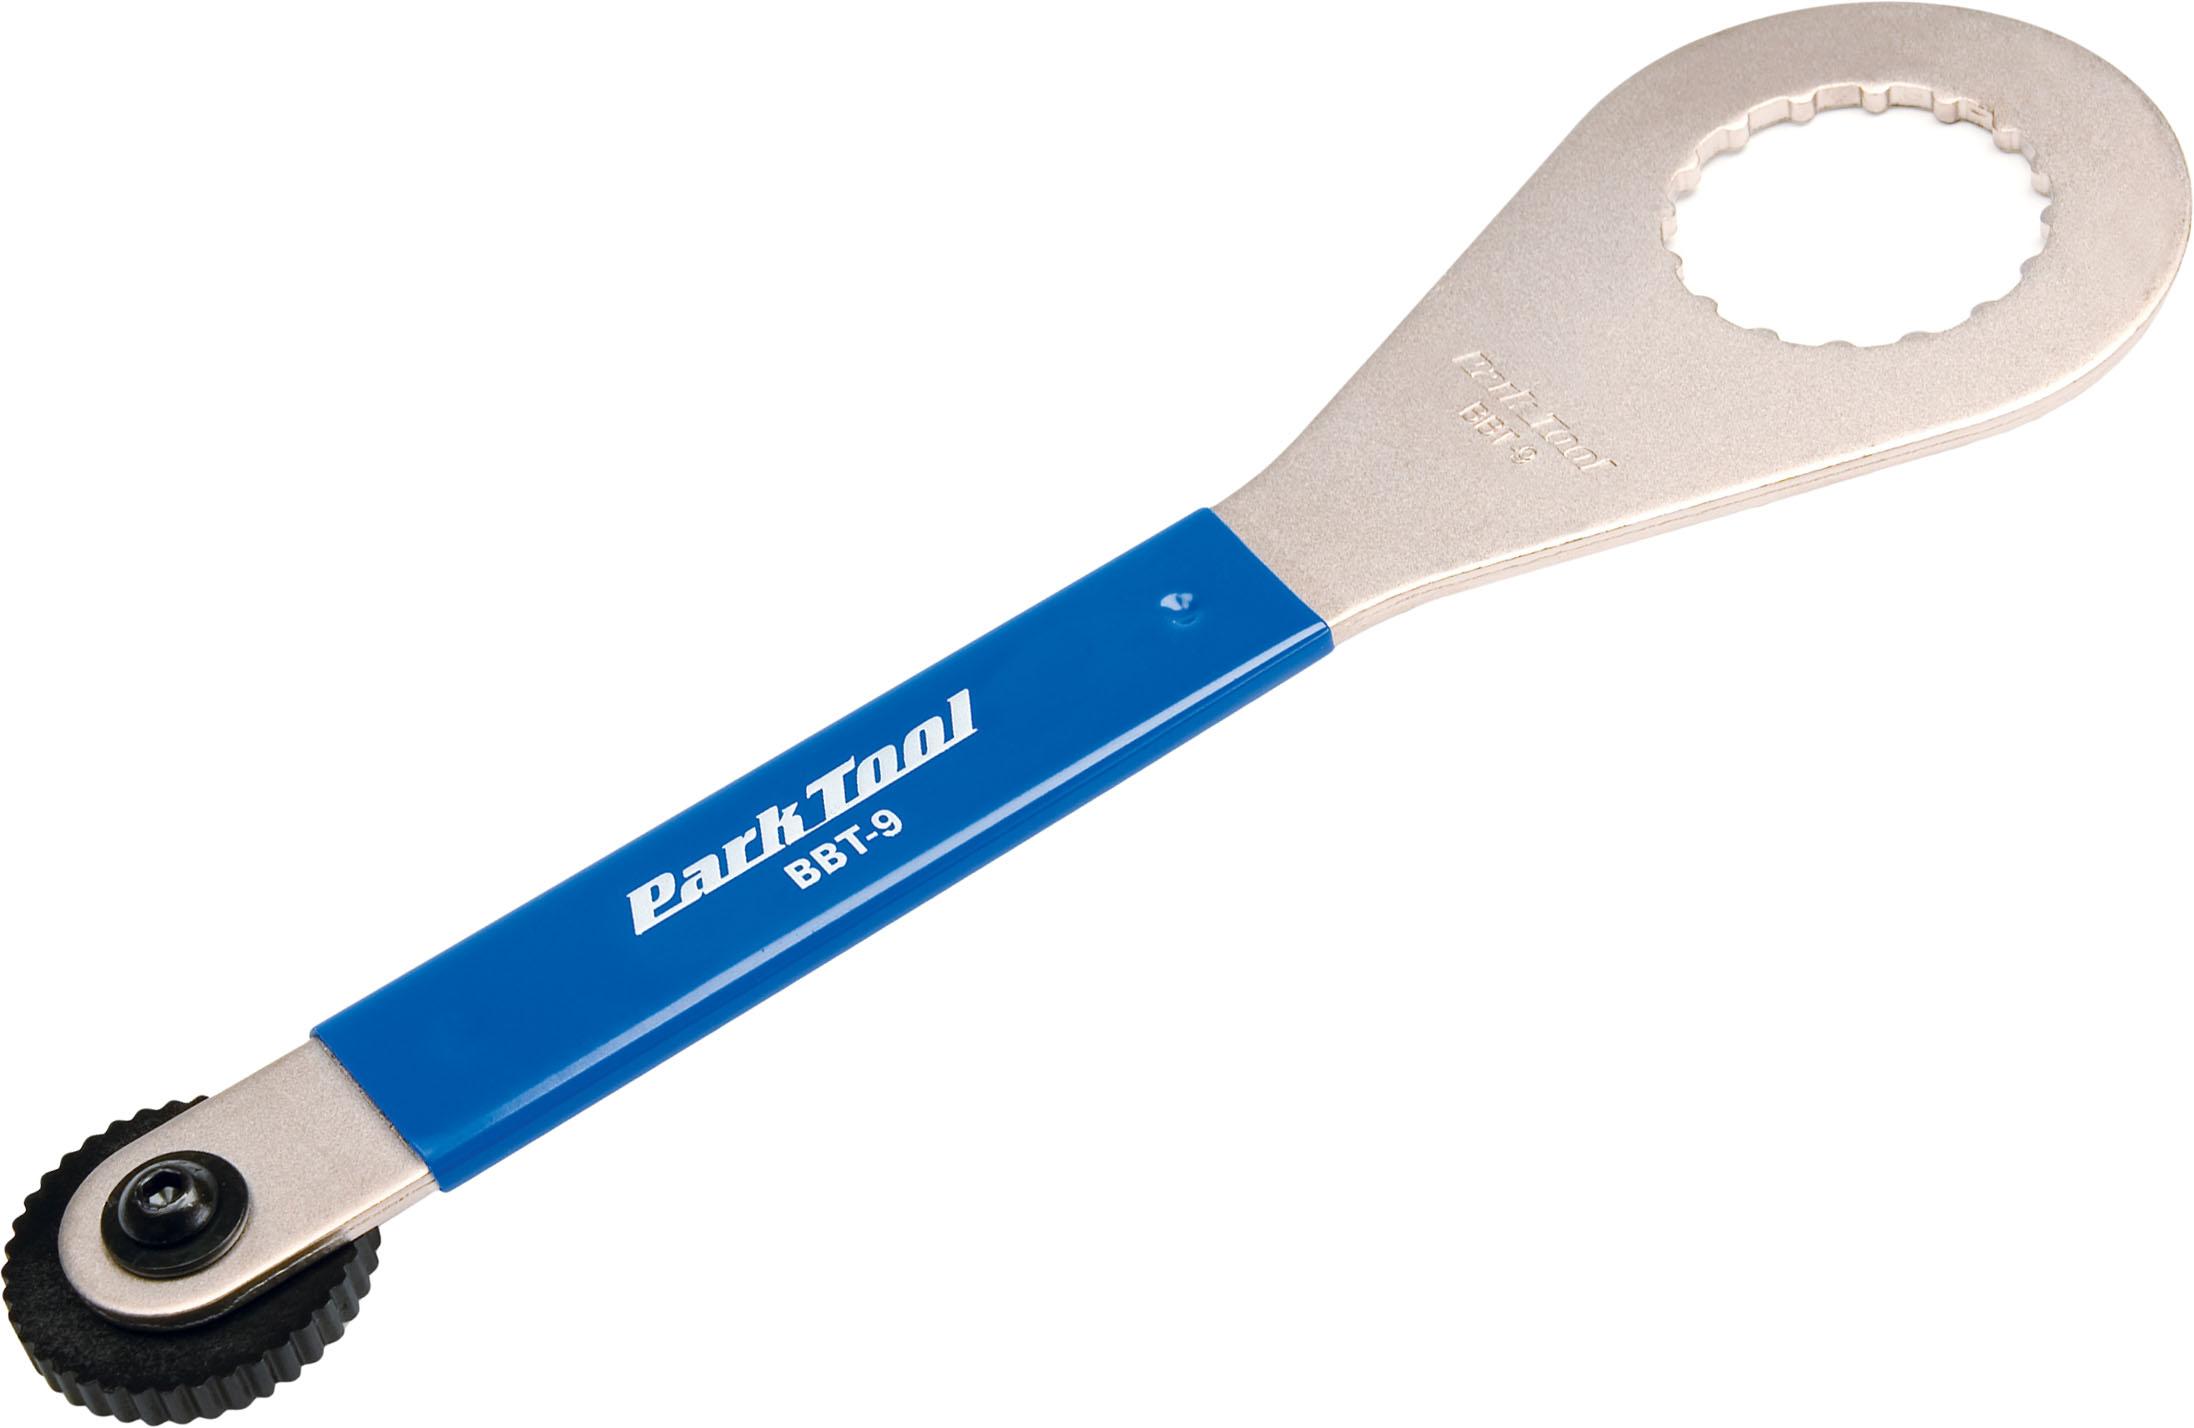 Park Tool Bottom Bracket Tool (bbt-9)  Silver